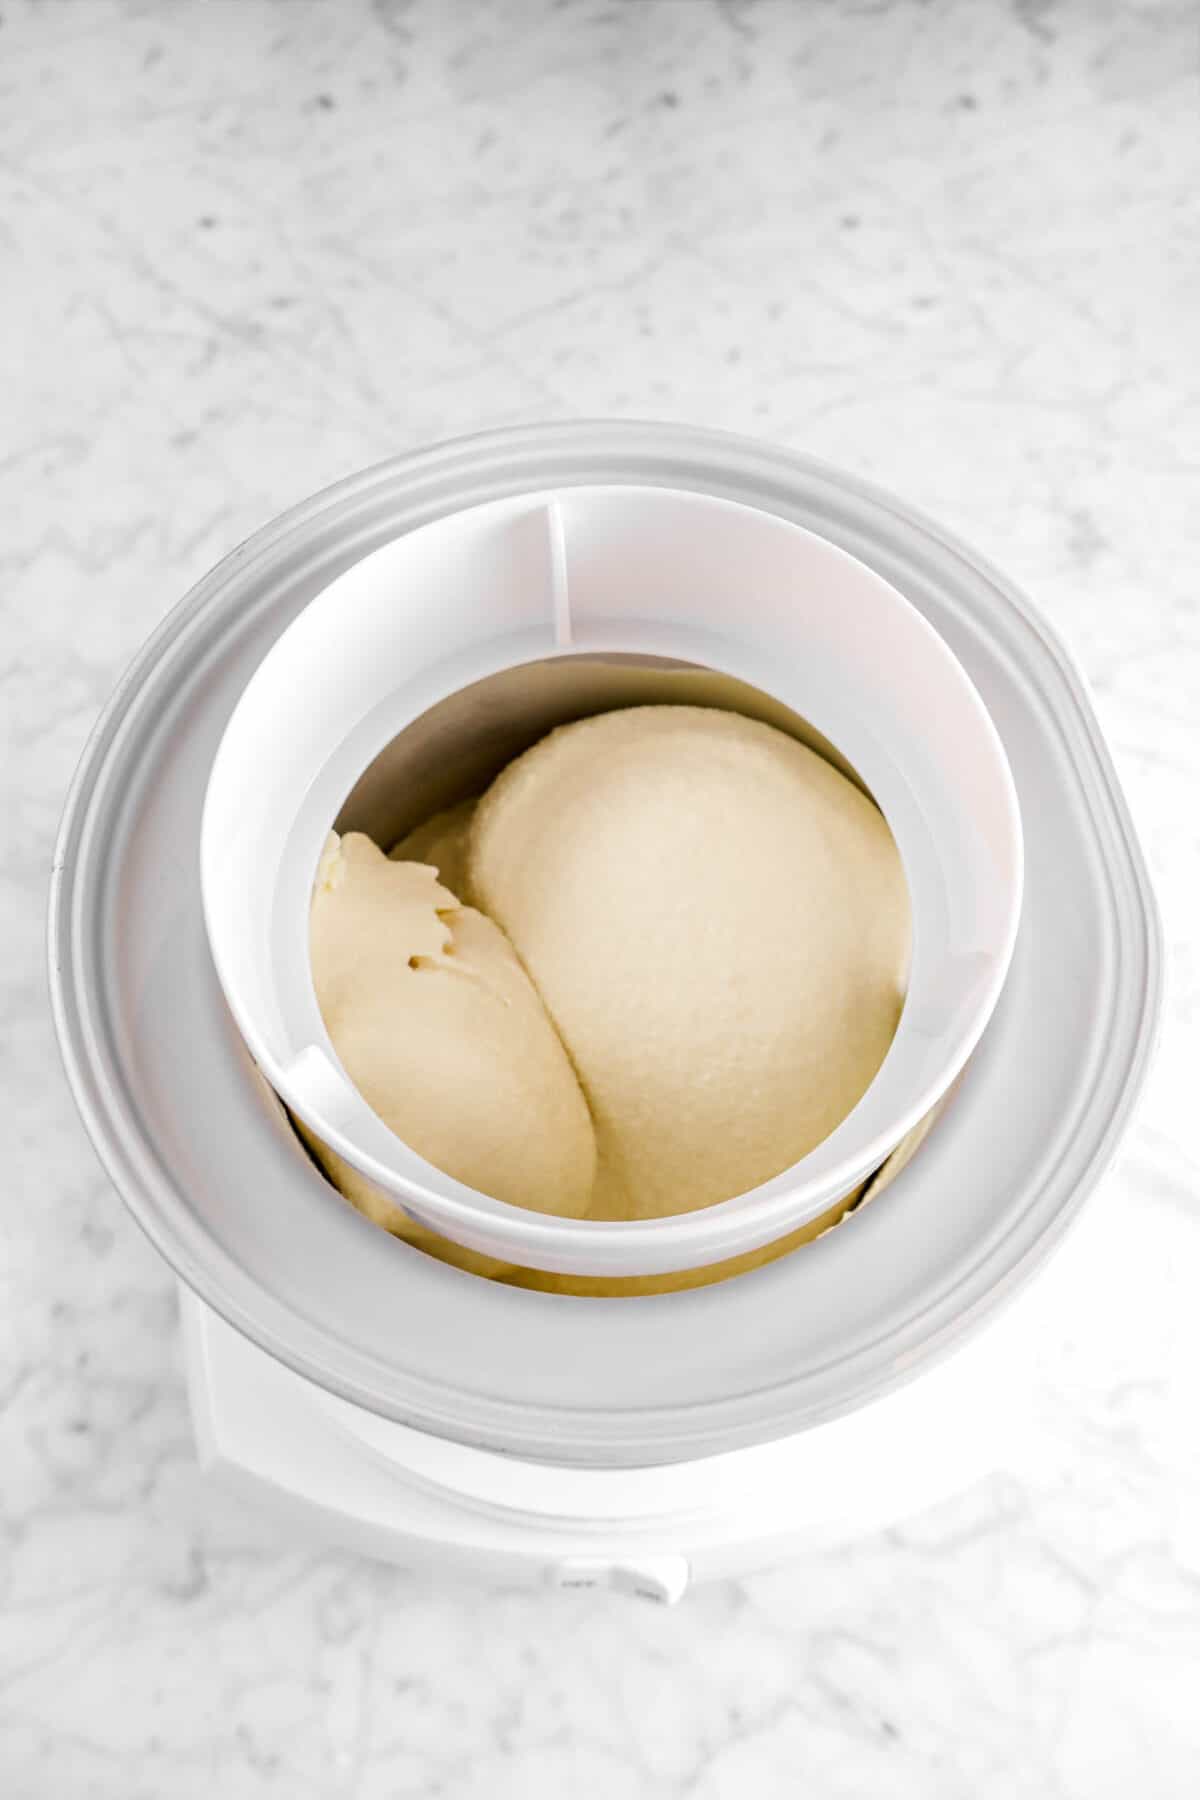 Irish cream ice cream in white ice cream machine